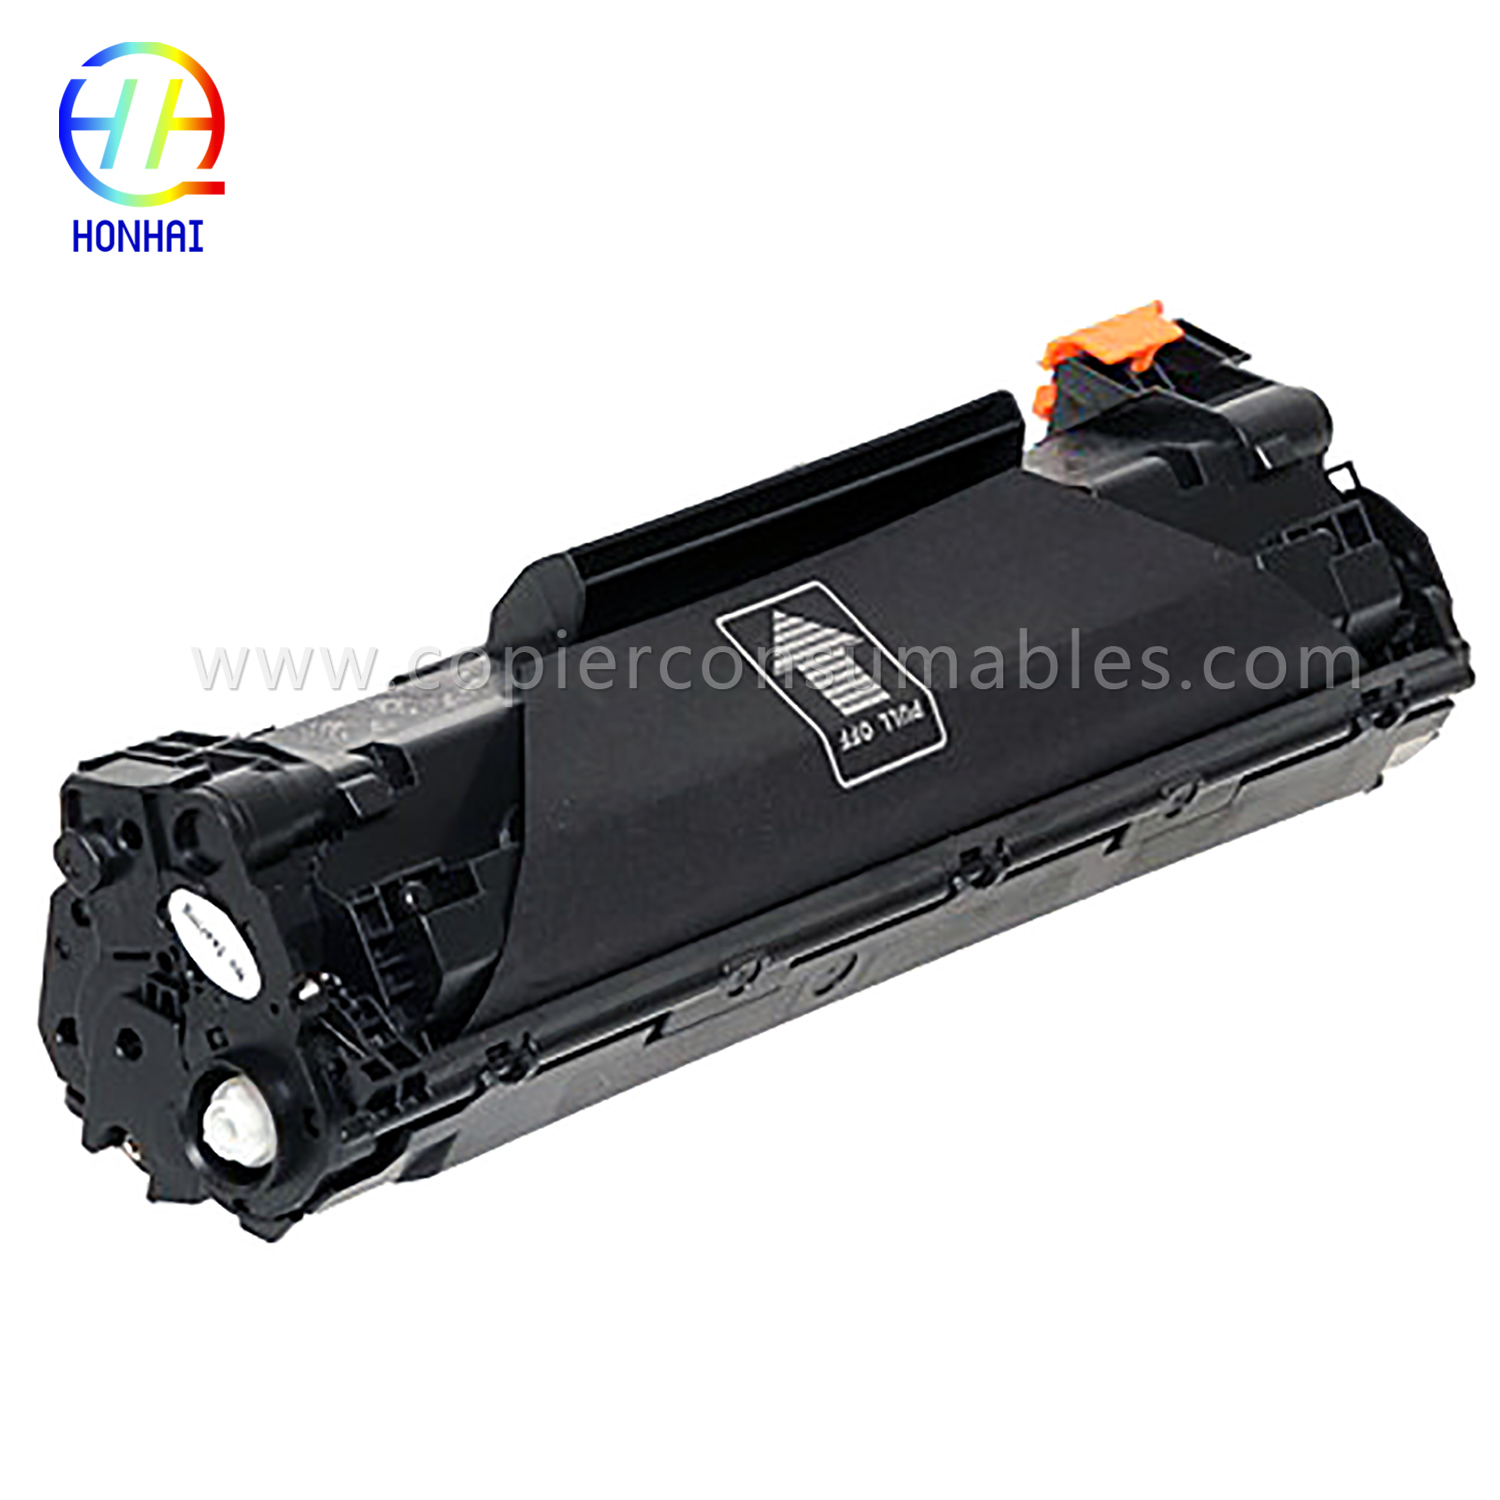 შავი ტონერის კარტრიჯი HP LaserJet Pro M1536dnf P1606dn (CE278A) 13.8x5.1x6.4 -1 拷贝